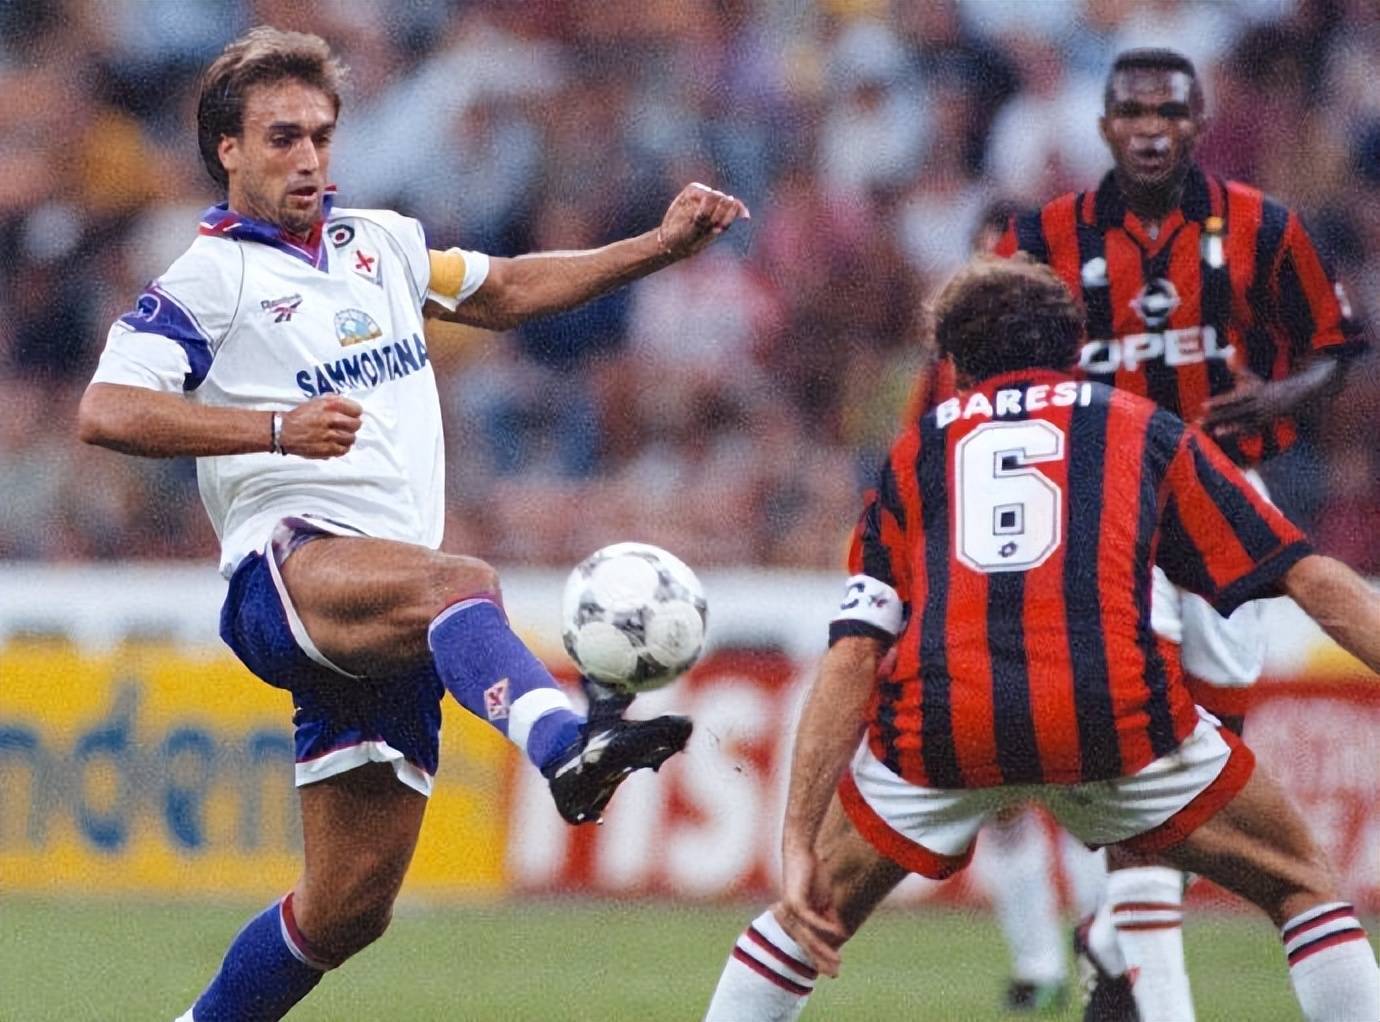 168娱乐-娱乐足球资料-AC米兰1996-1997赛季意超杯不敌紫百合+意大利杯早早出局